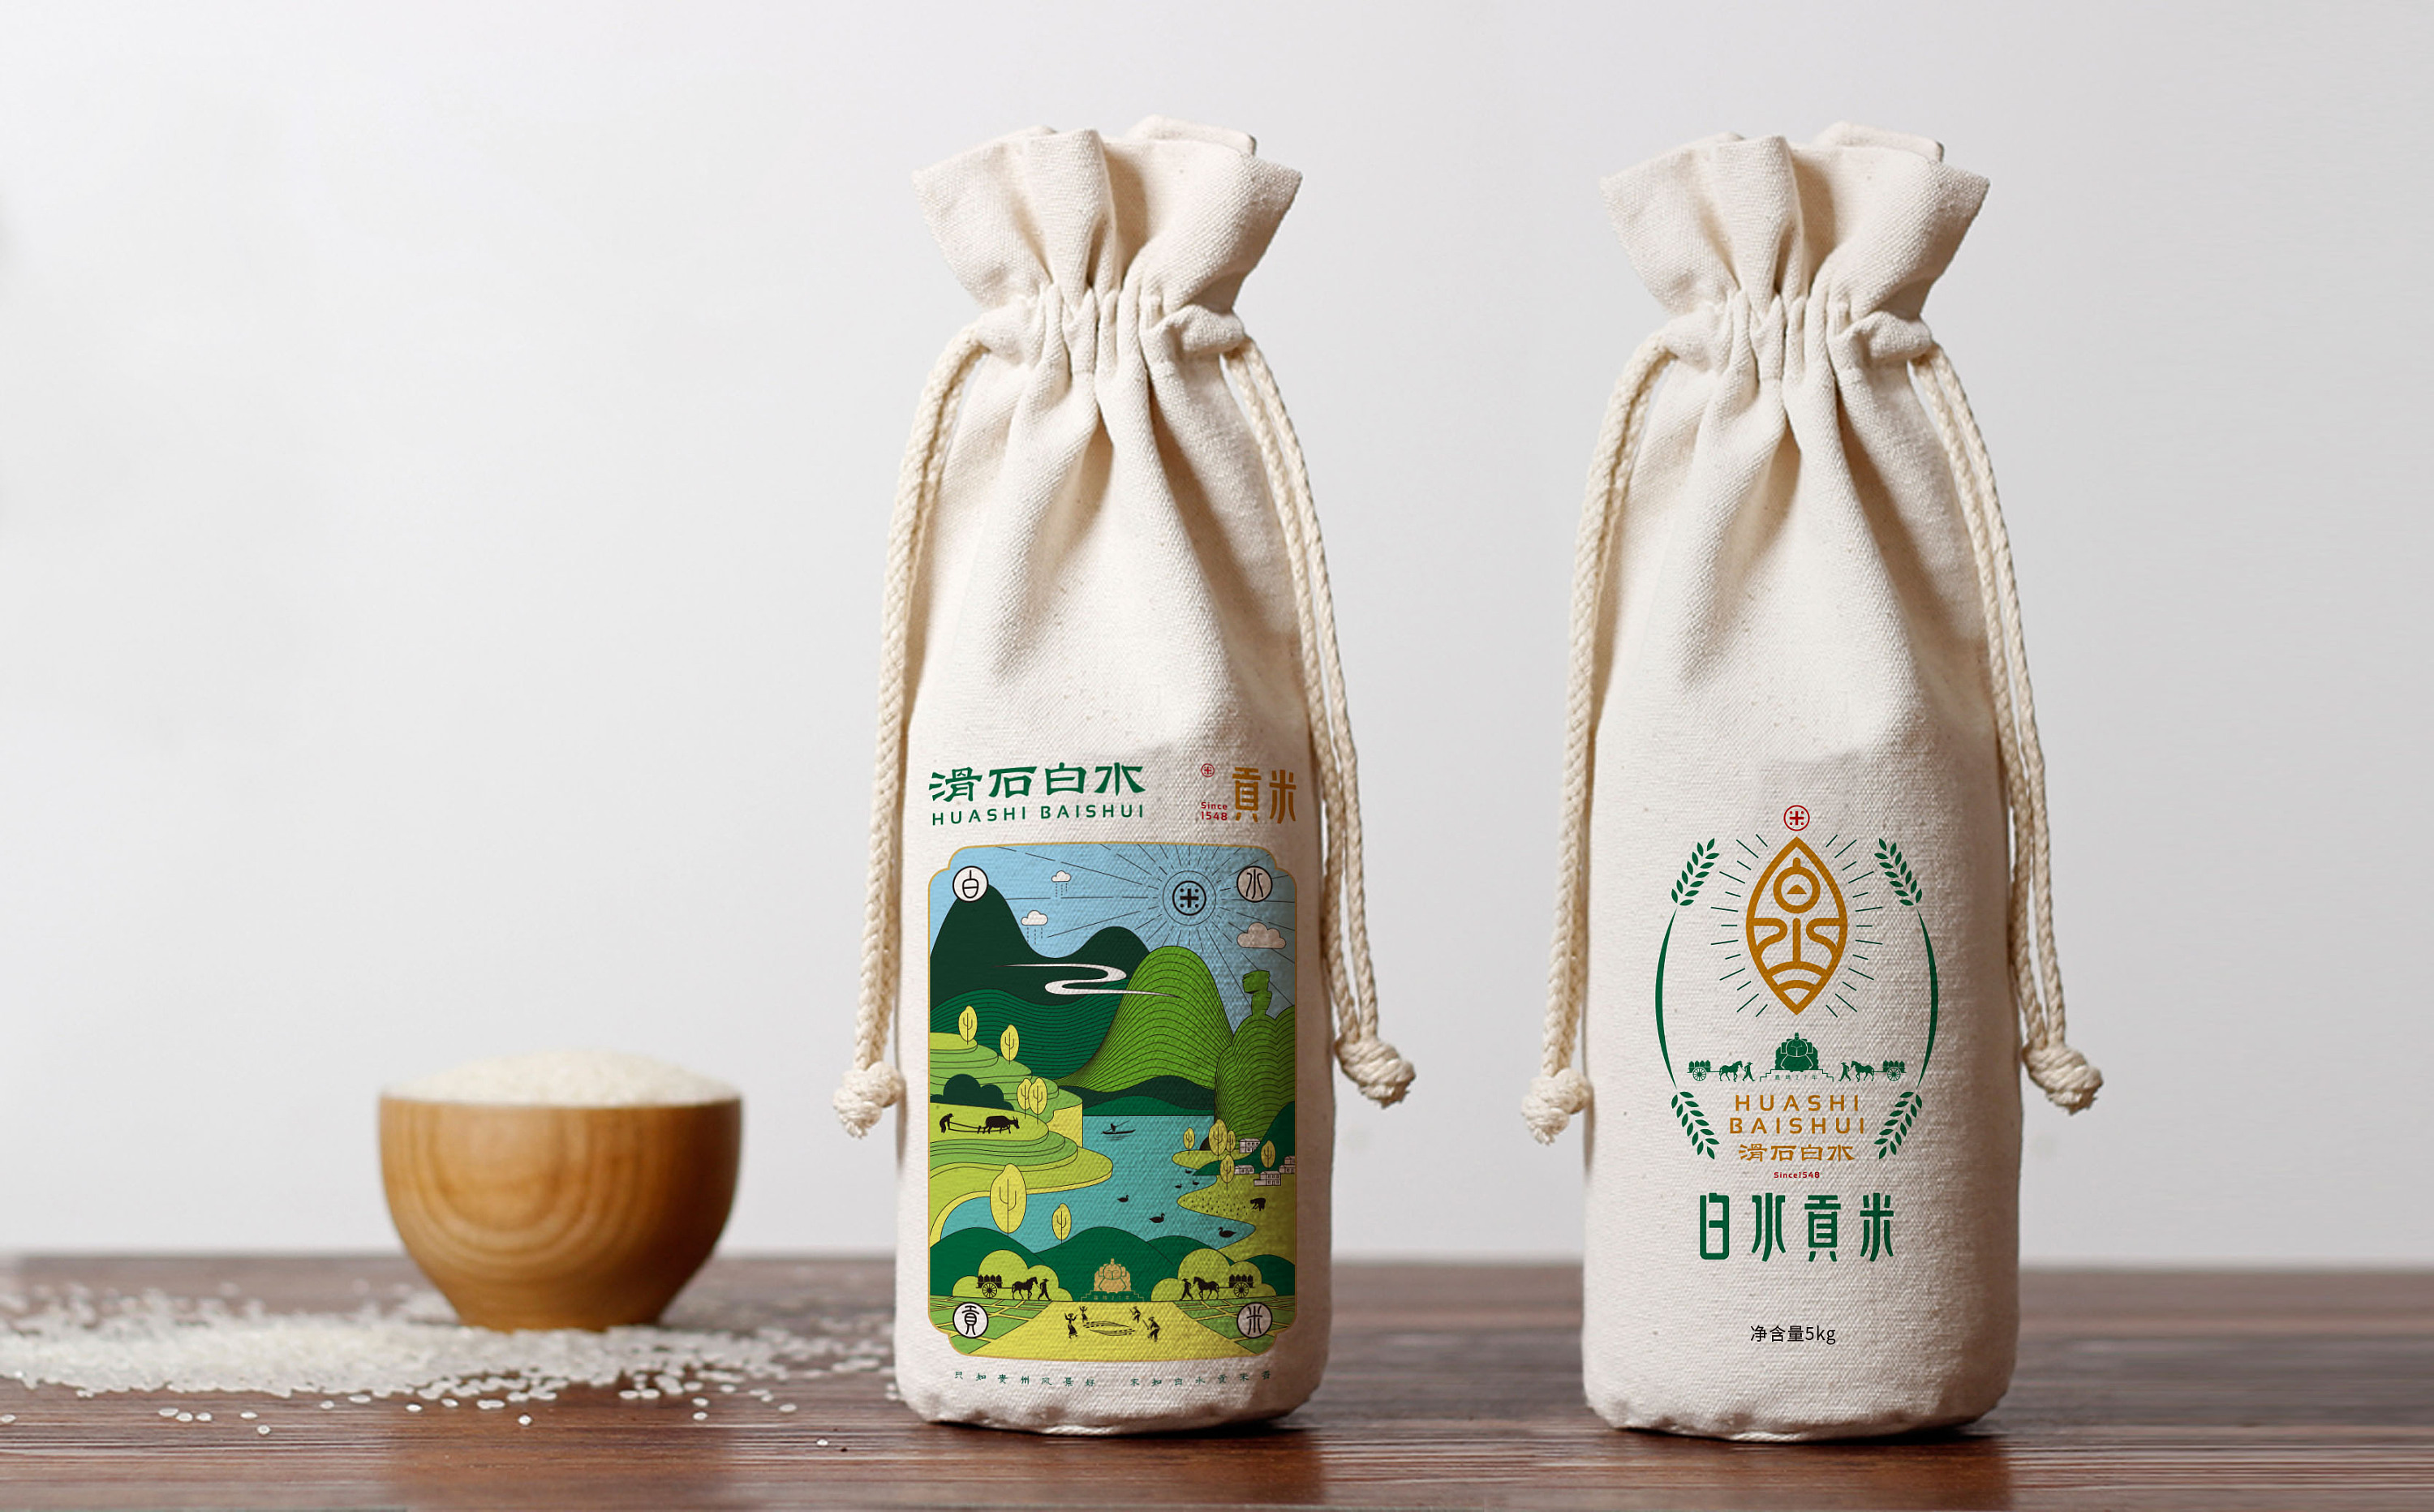 大米食品包装设计 枫桥设计